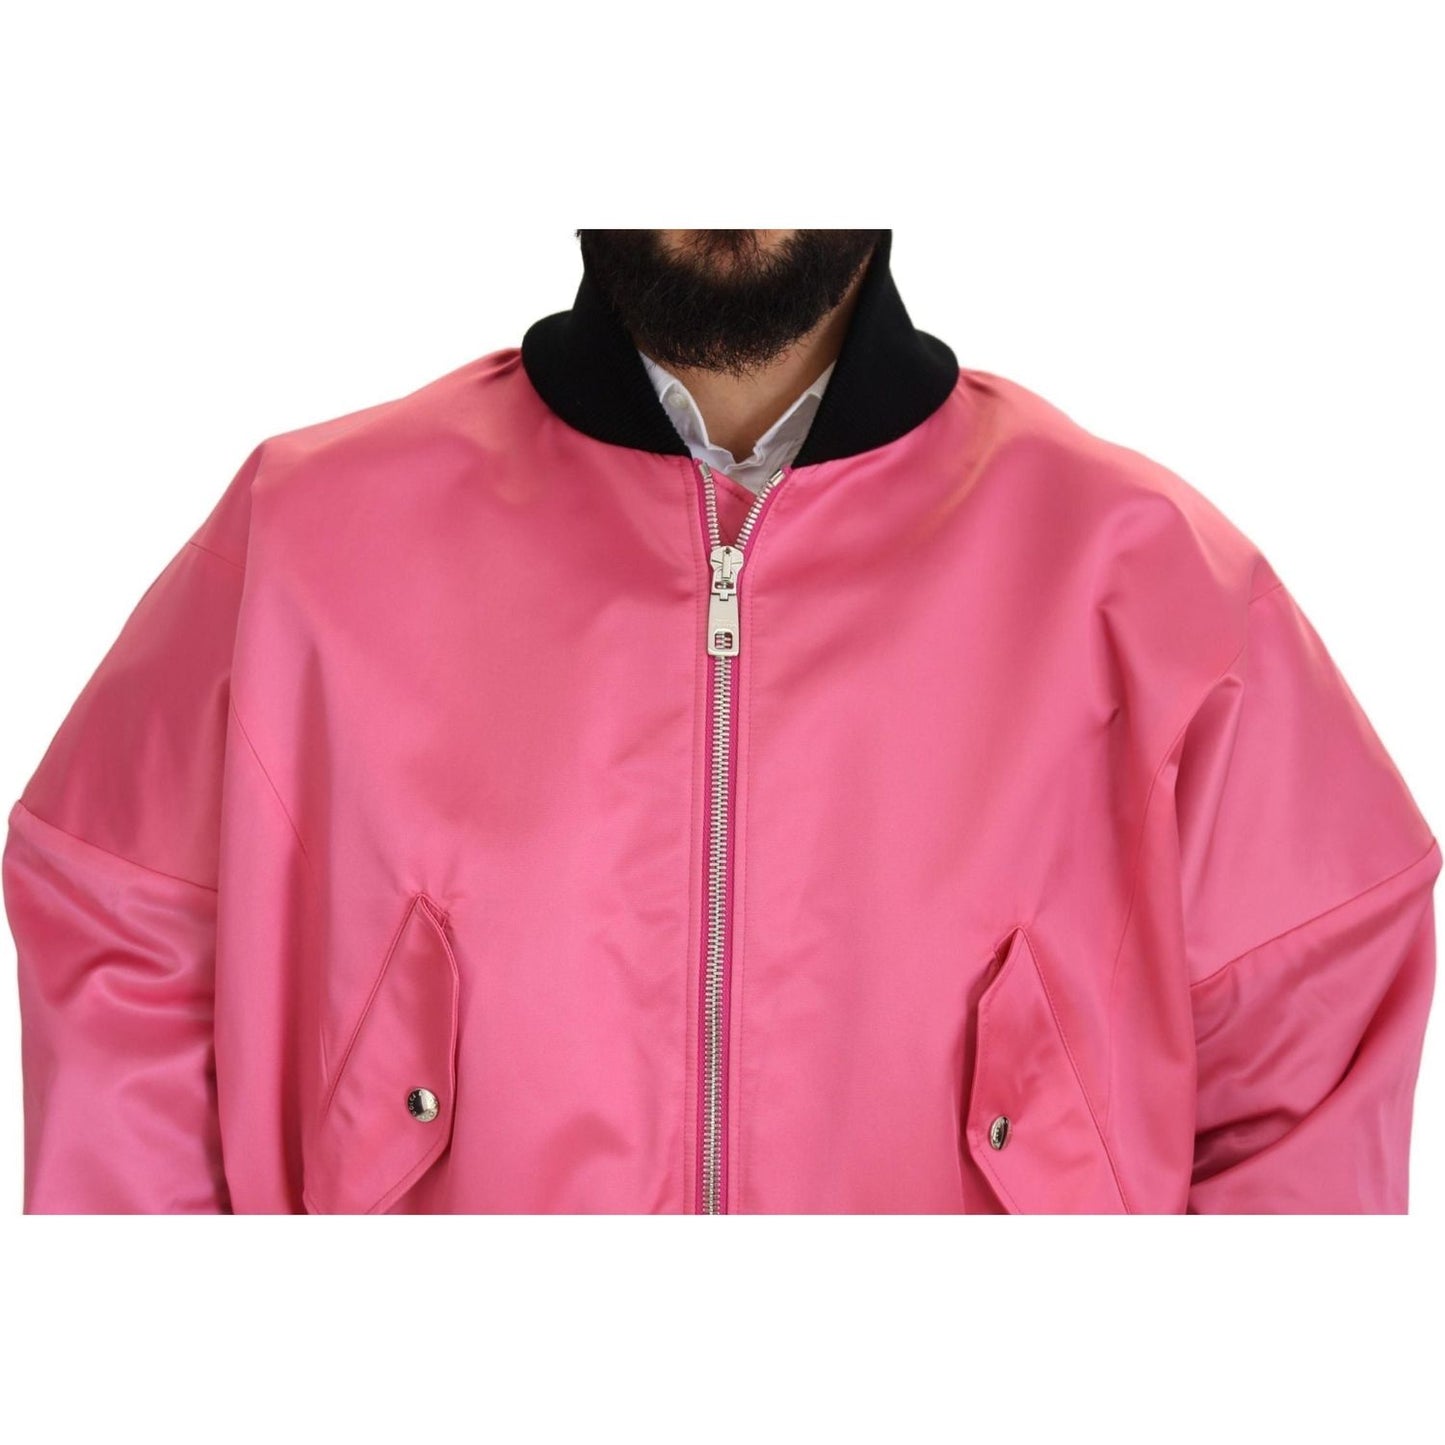 Dolce & Gabbana Elegant Pink Nylon Bomber Jacket nylon-pink-men-full-zip-bomber-jacket IMG_8140-scaled-4cd7f69a-a1d.jpg